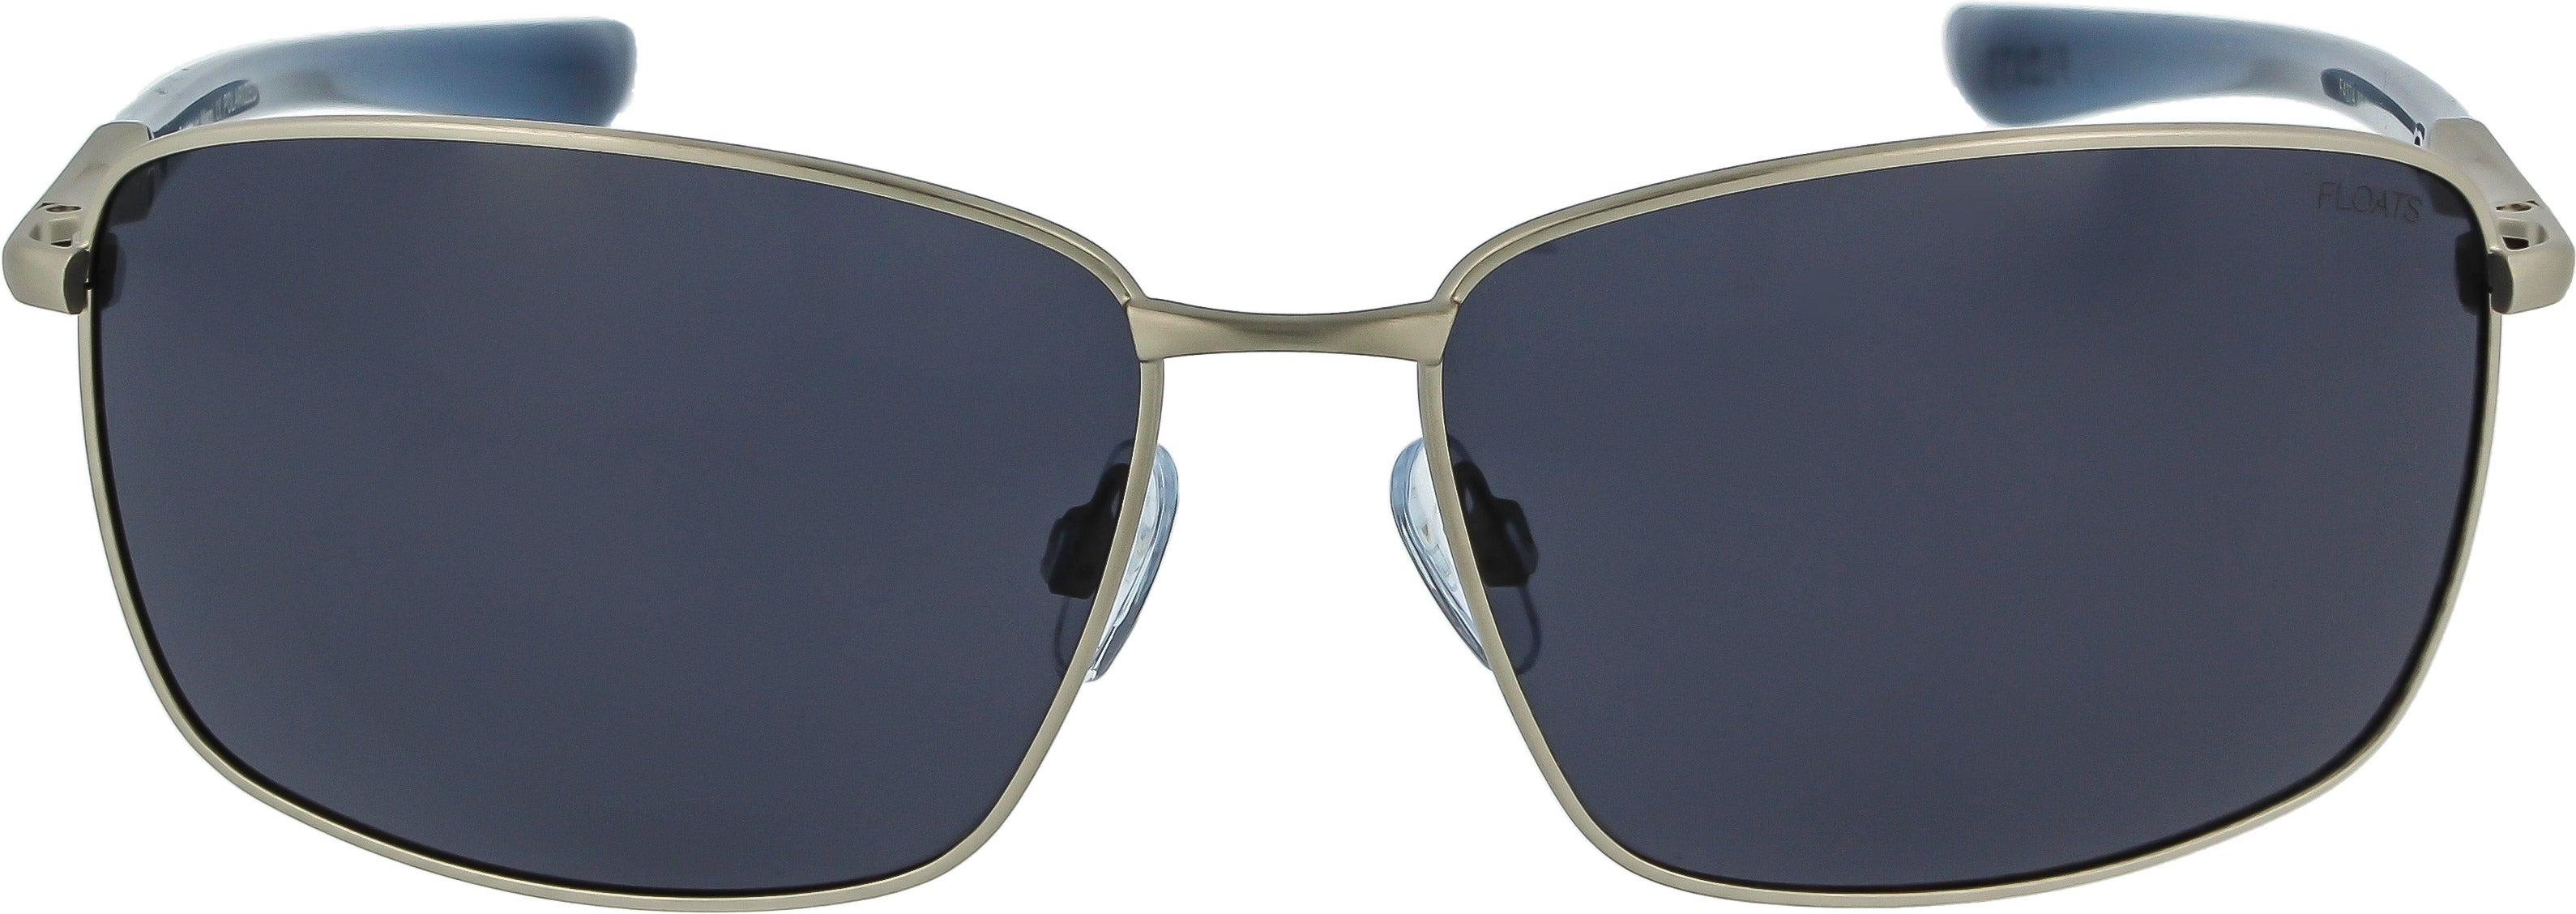 MALIDAK Floating Sunglasses, TPX Polarized Floating Sunglasses, Sunglasses  With Case for Men